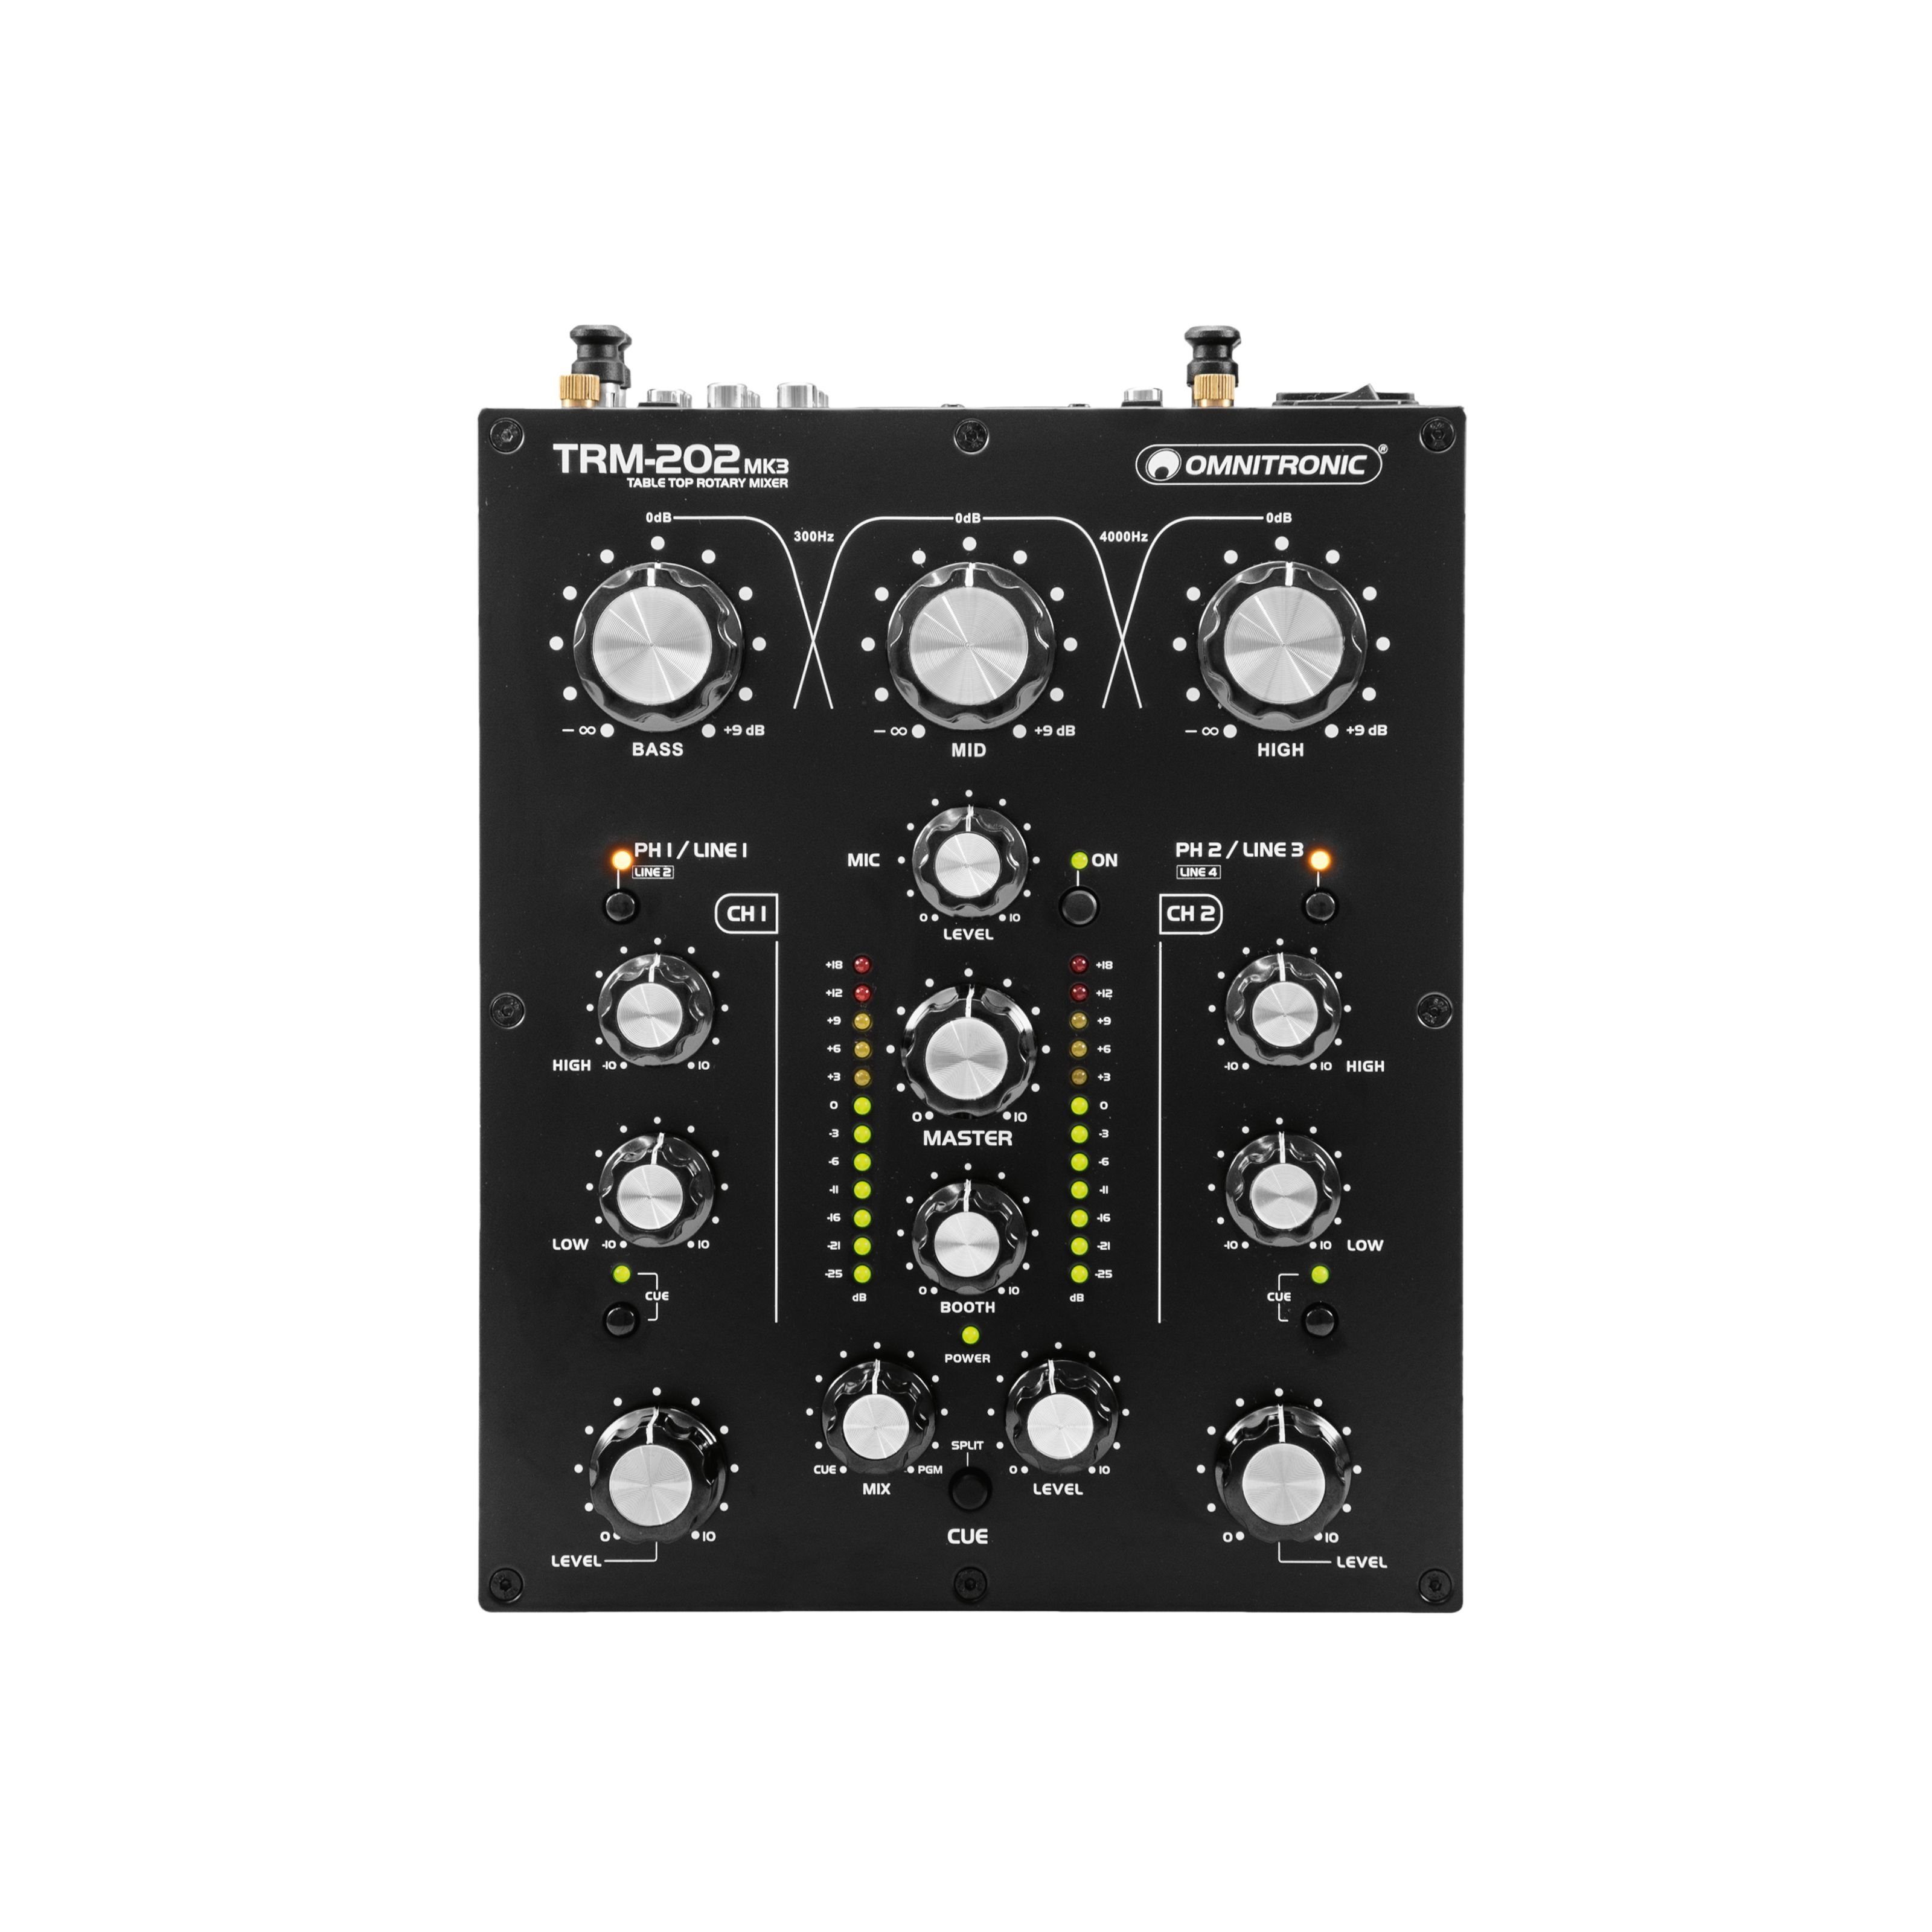 Omnitronic Mischpult, TRM-202MK3, 2-Kanal-Rotary-Mixer,  3-Band-Frequenzisolator für DJs, Gainregler, 2-Band-Equalizer (Höhen/Bässe)  und Phono/Line-Umschaltung online kaufen | OTTO